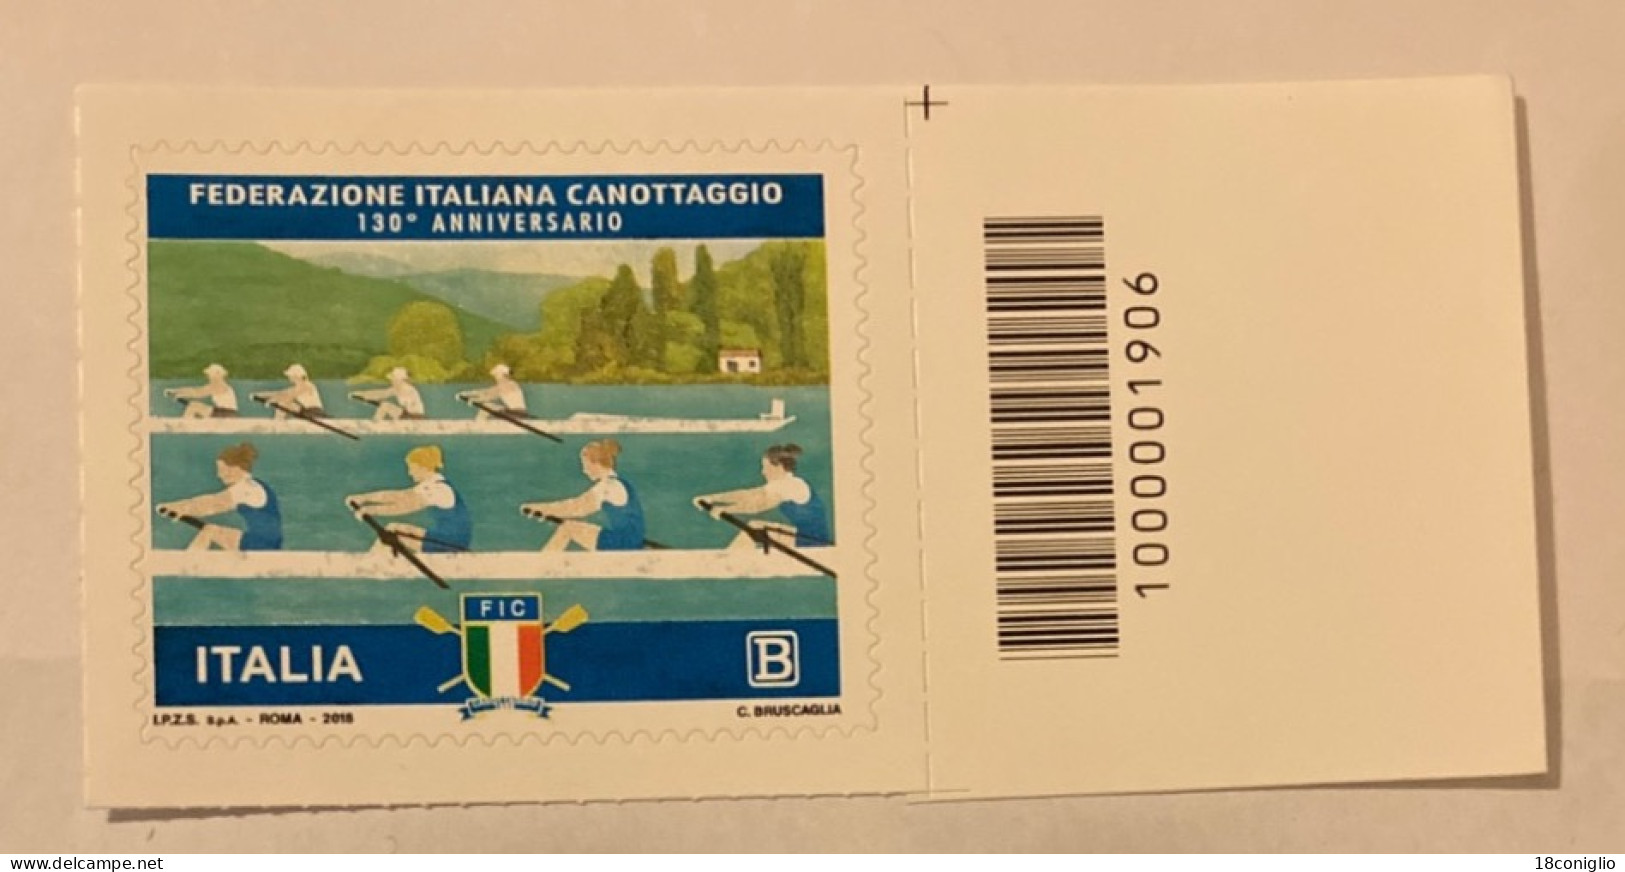 Italia 2018 Codice A Barre 1906 Federazione Italiana Canottaggio - Code-barres